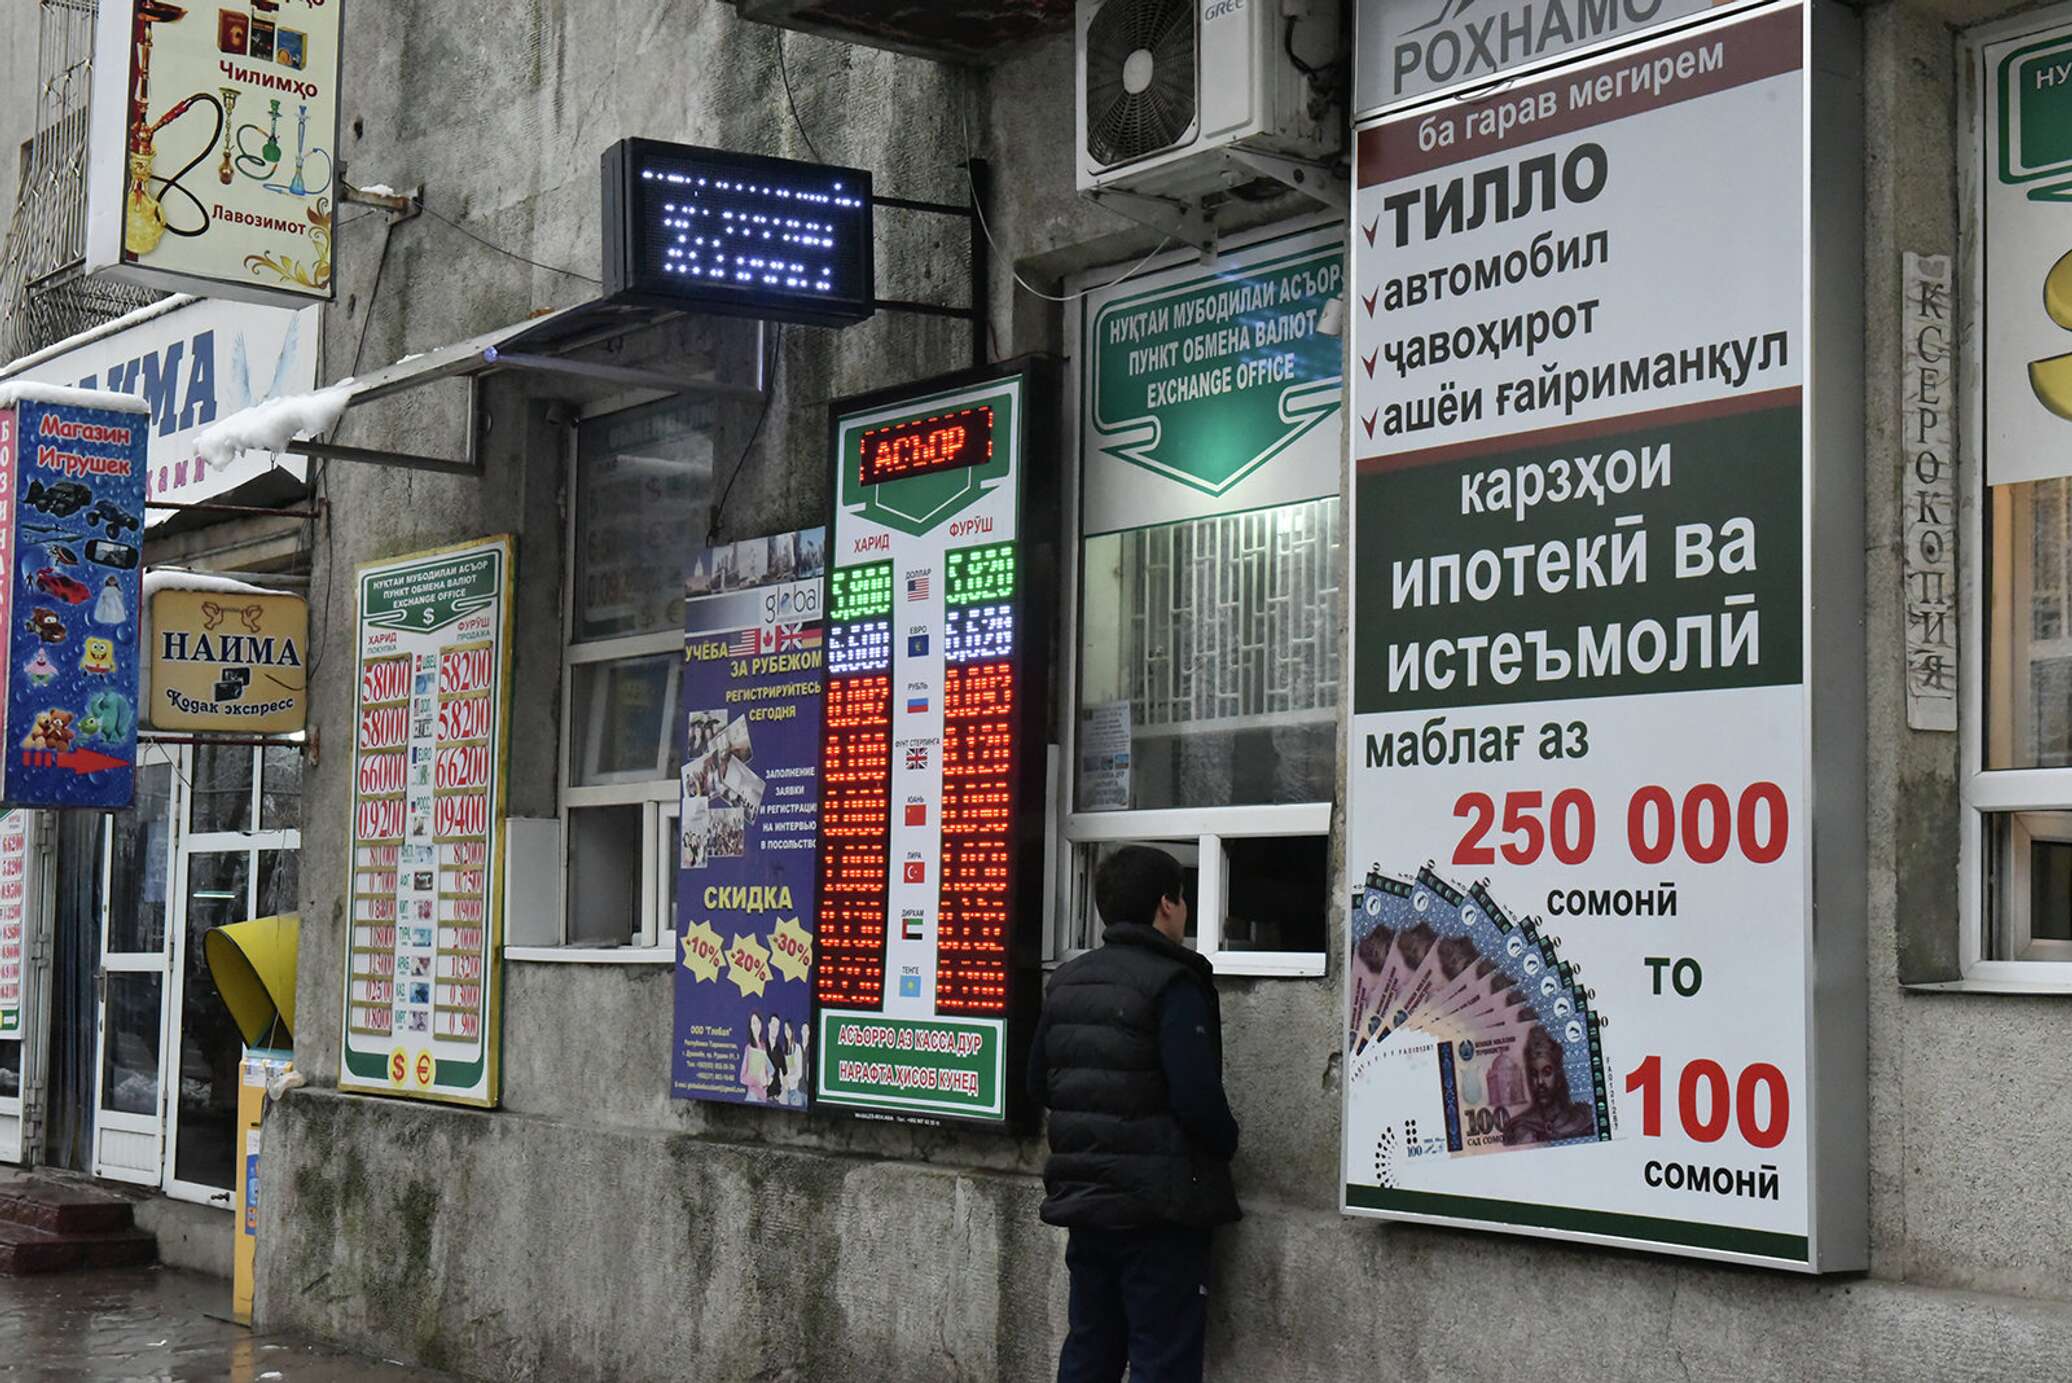 Рубил 1000 курс таджикистан сегодня. Обмен валюты. Обменник валют. Курсы валют в Таджикистане. Обменные пункты в Таджикистане.